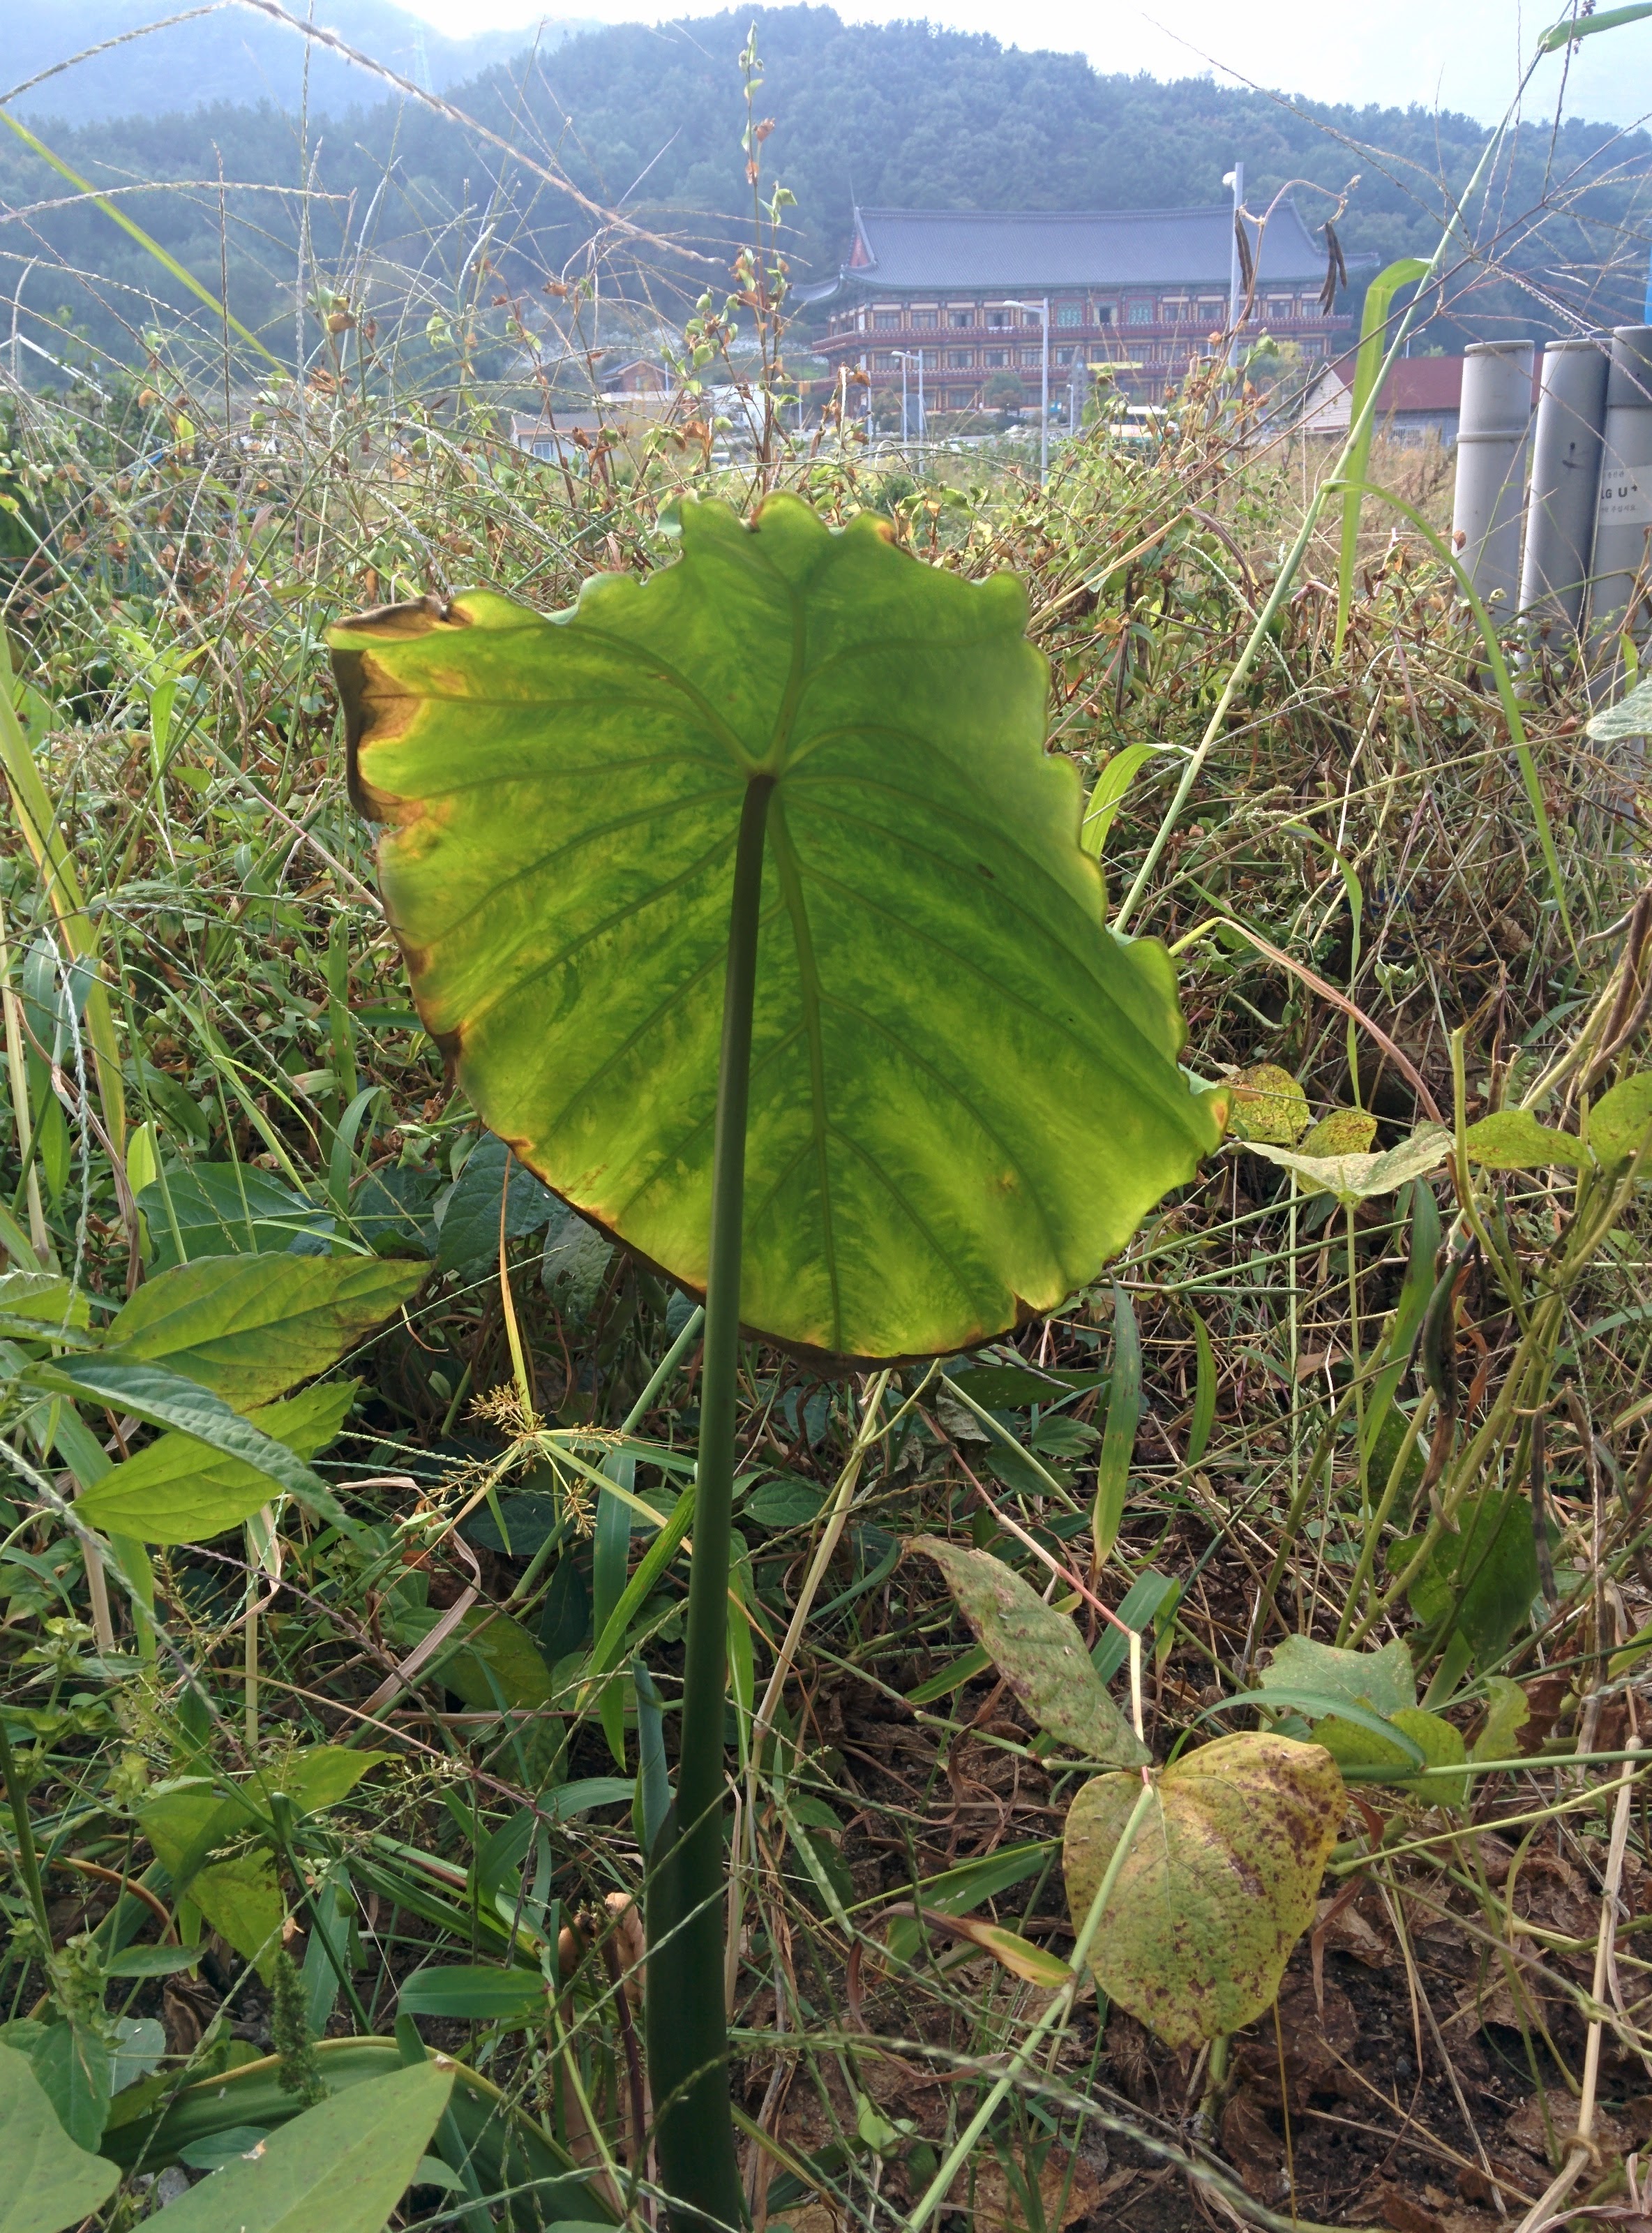 IMG_20151003_160405.jpg 우산처럼 넓은 잎을 가진 토란